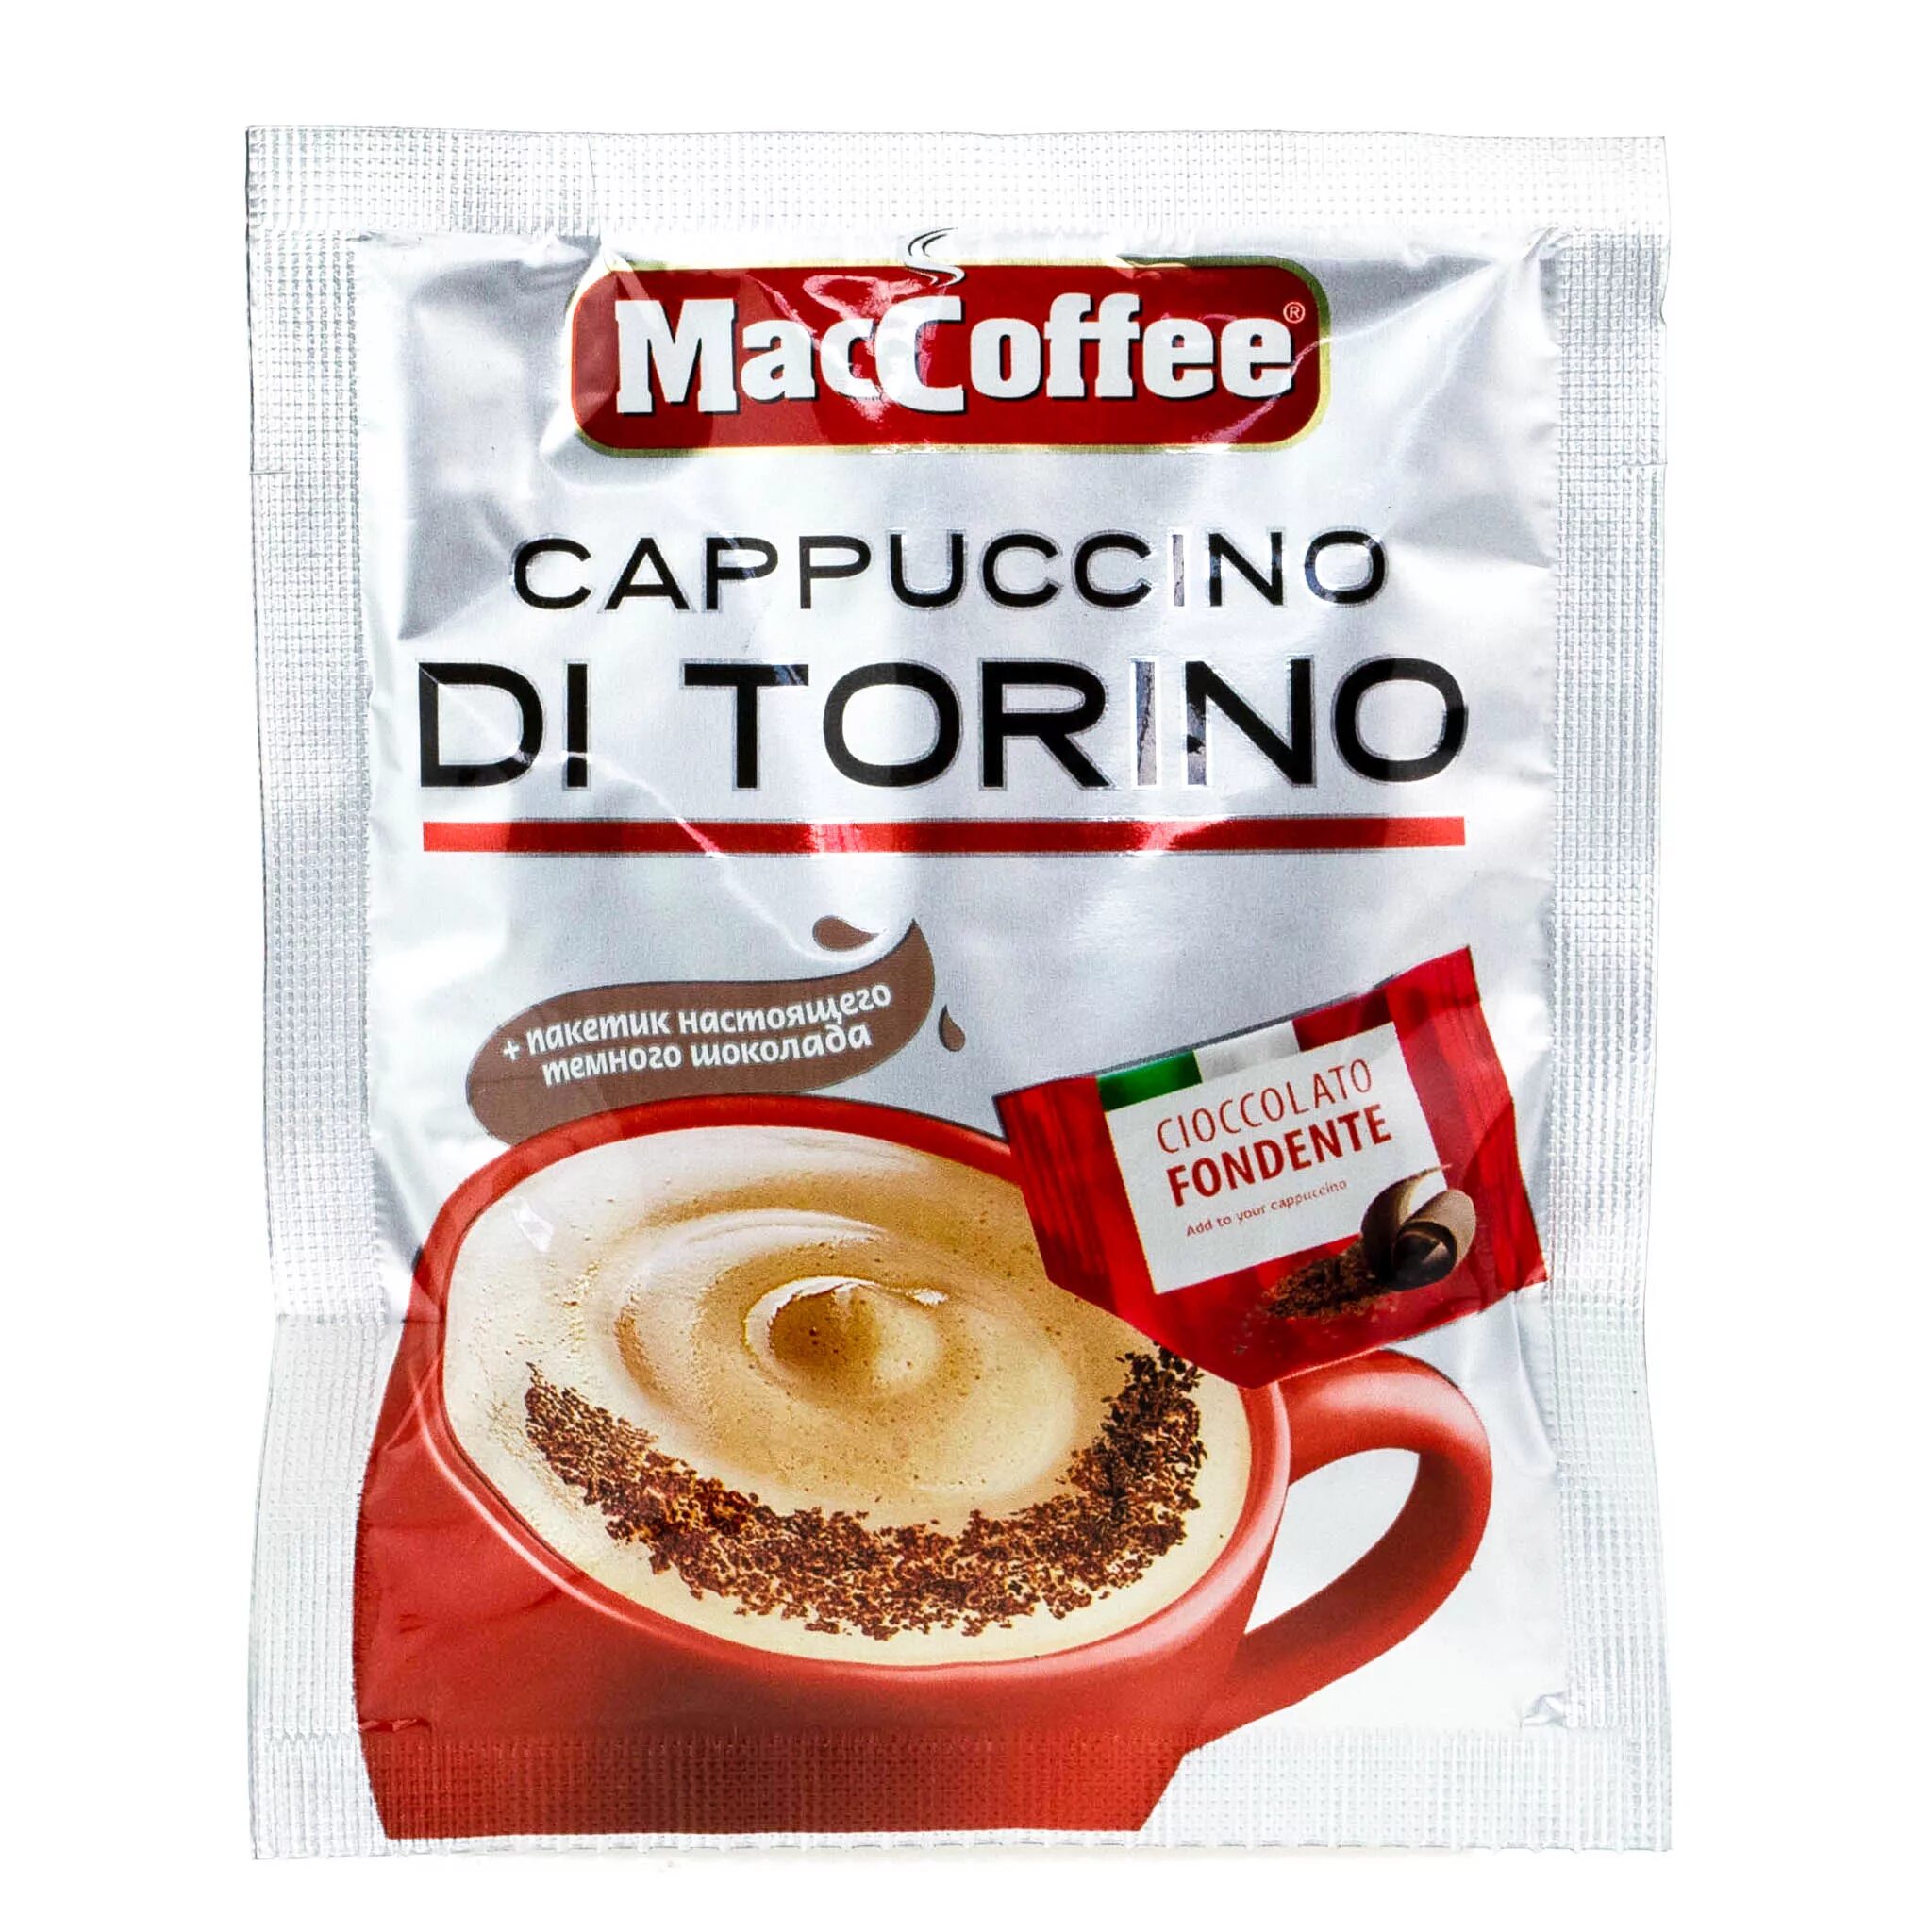 Купить маккофе. Кофе 3 в 1 Маккофе. Кофе 3 в 1 Маккофе капучино. Маккофе 3 в 1 капучино di Torino. Растворимый кофе MACCOFFEE Cappuccino.